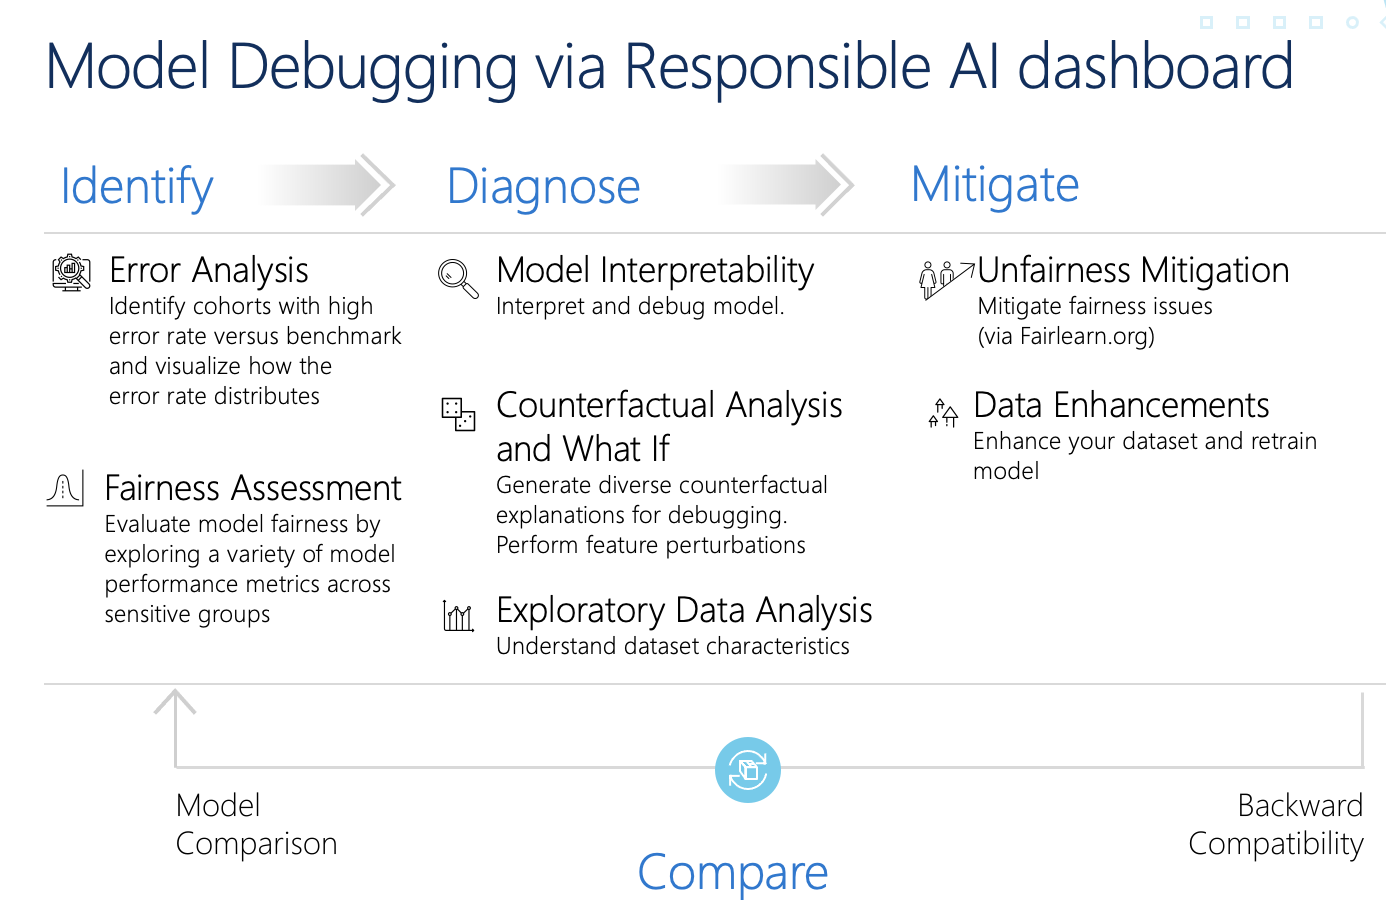 Diagram of model debugging via Responsible AI dashboard.